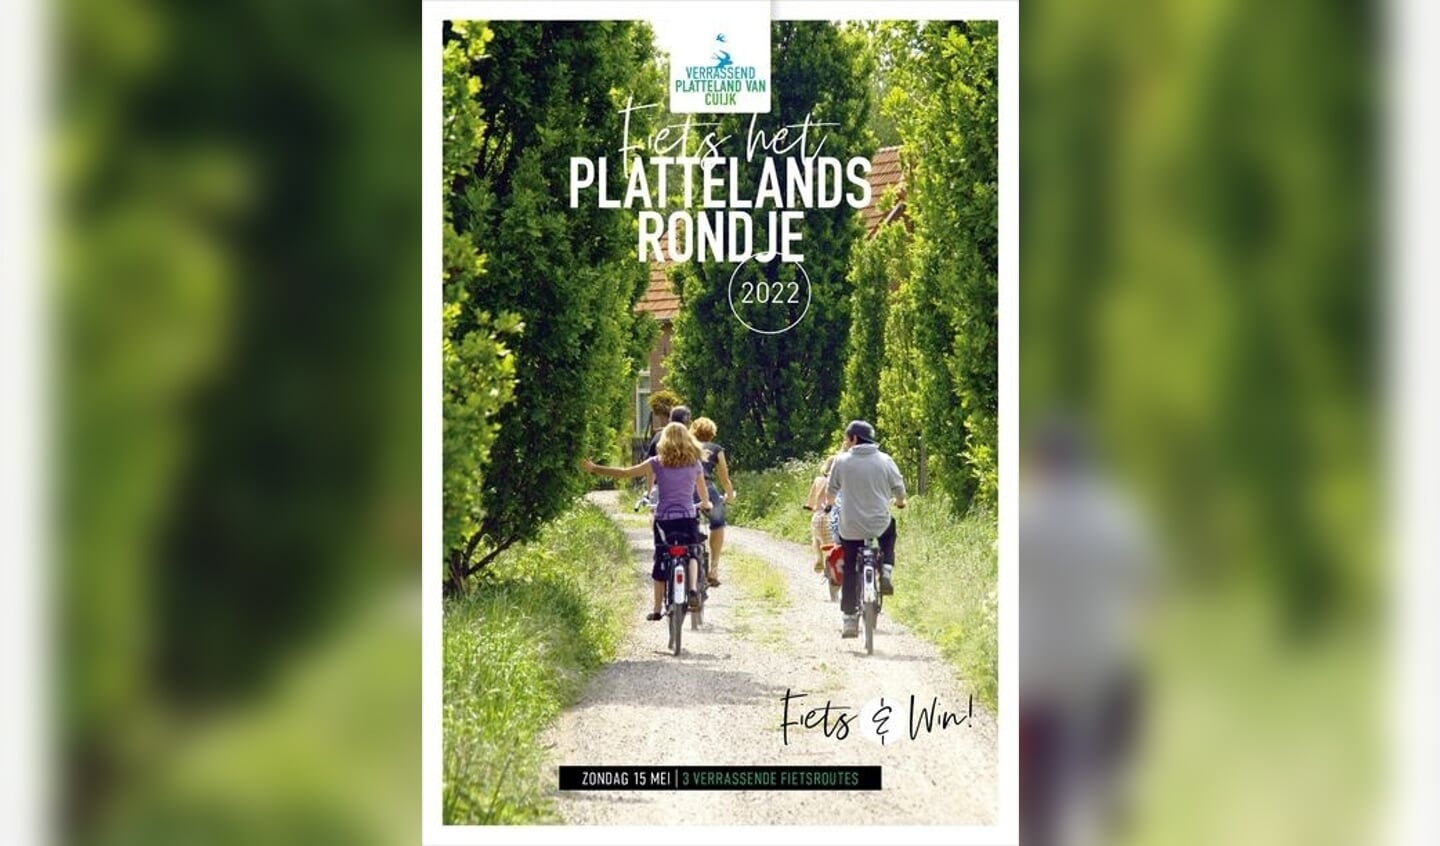 Verrassend PlatteLand van Cuijk houdt op zondag 15 mei Ons Plattelandsrondje 